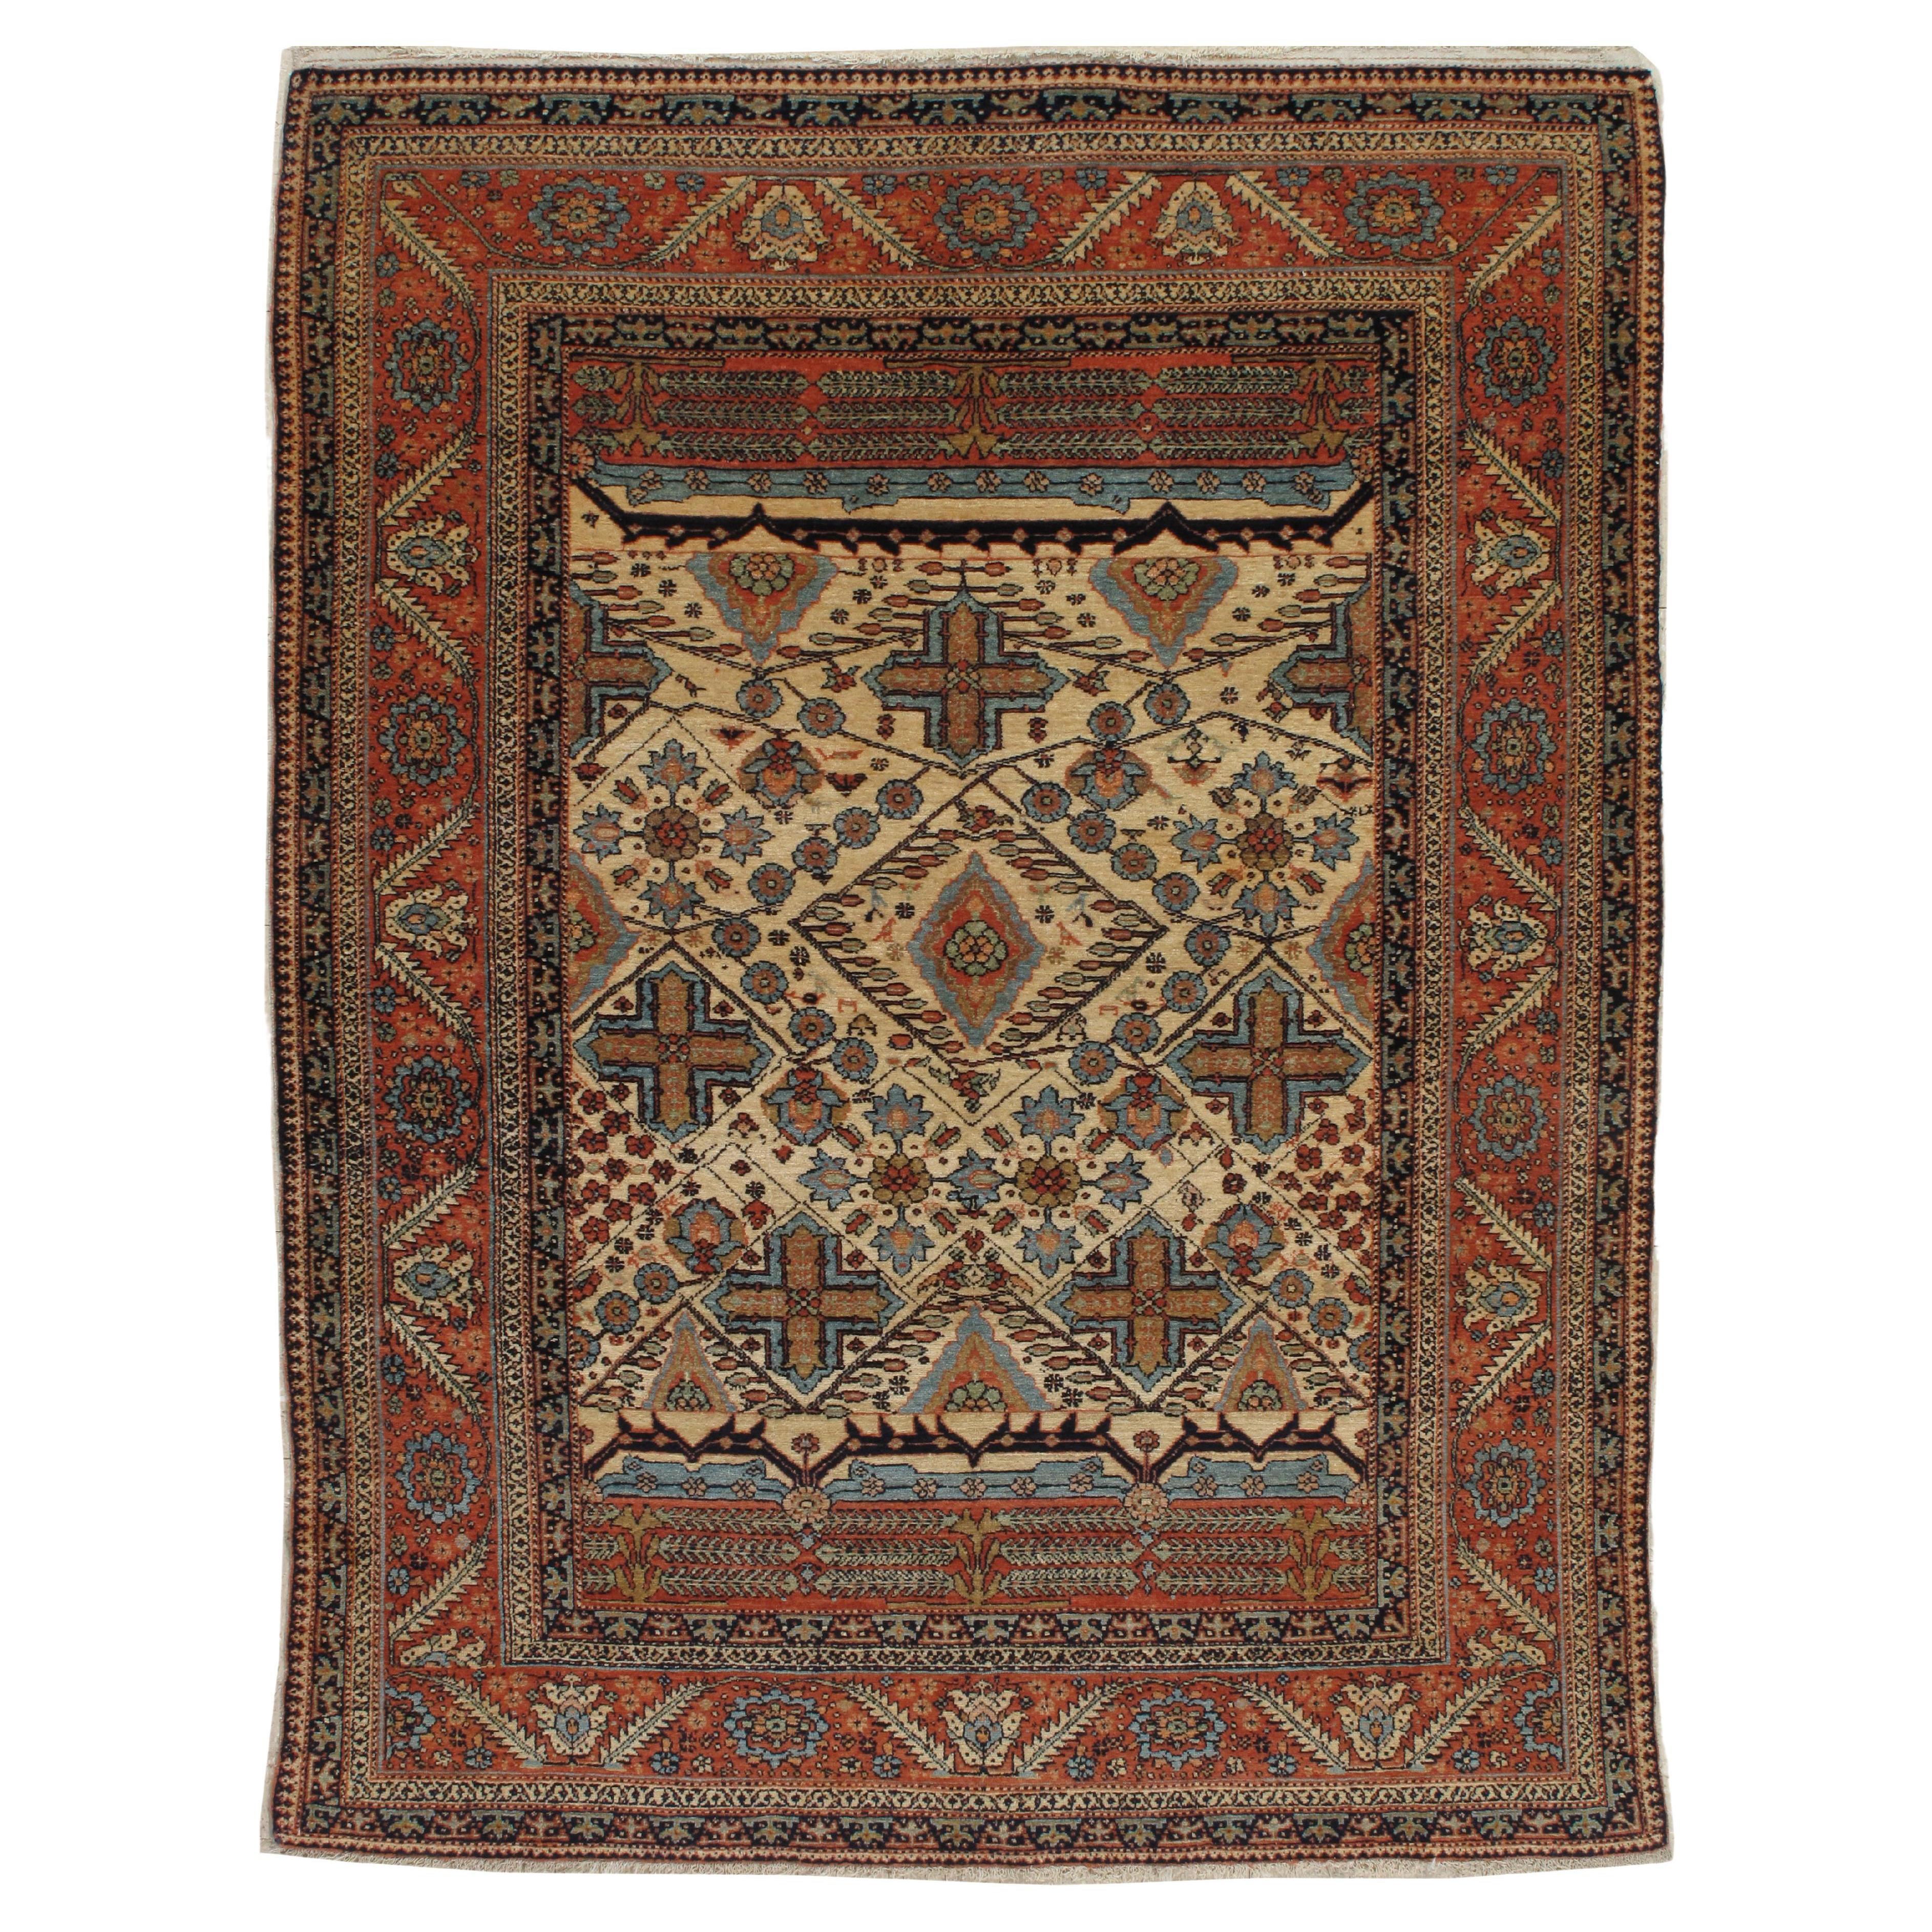 Antiker persischer Bakhshaish-Teppich, handgefertigt, elfenbeinfarben und rostfarben